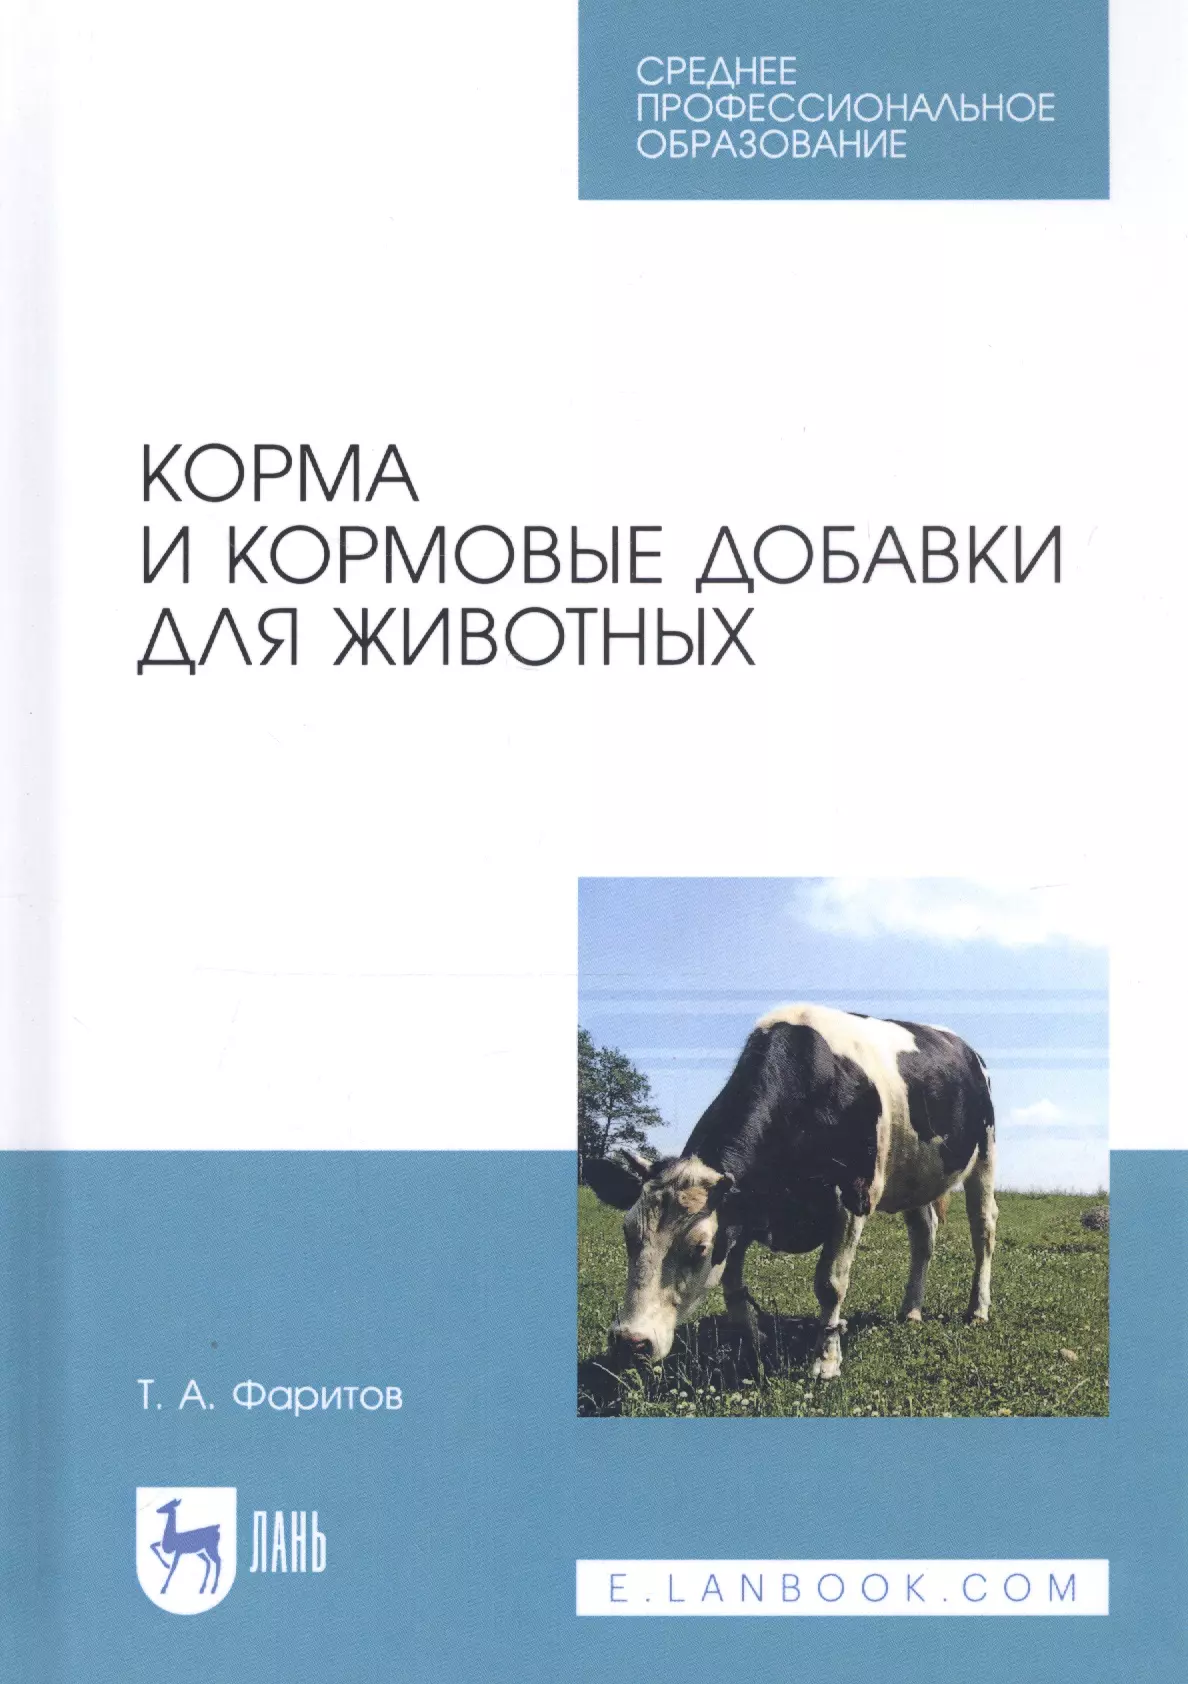 Фаритов Табрис Ахмадлисламович - Корма и кормовые добавки для животных. Учебное пособие